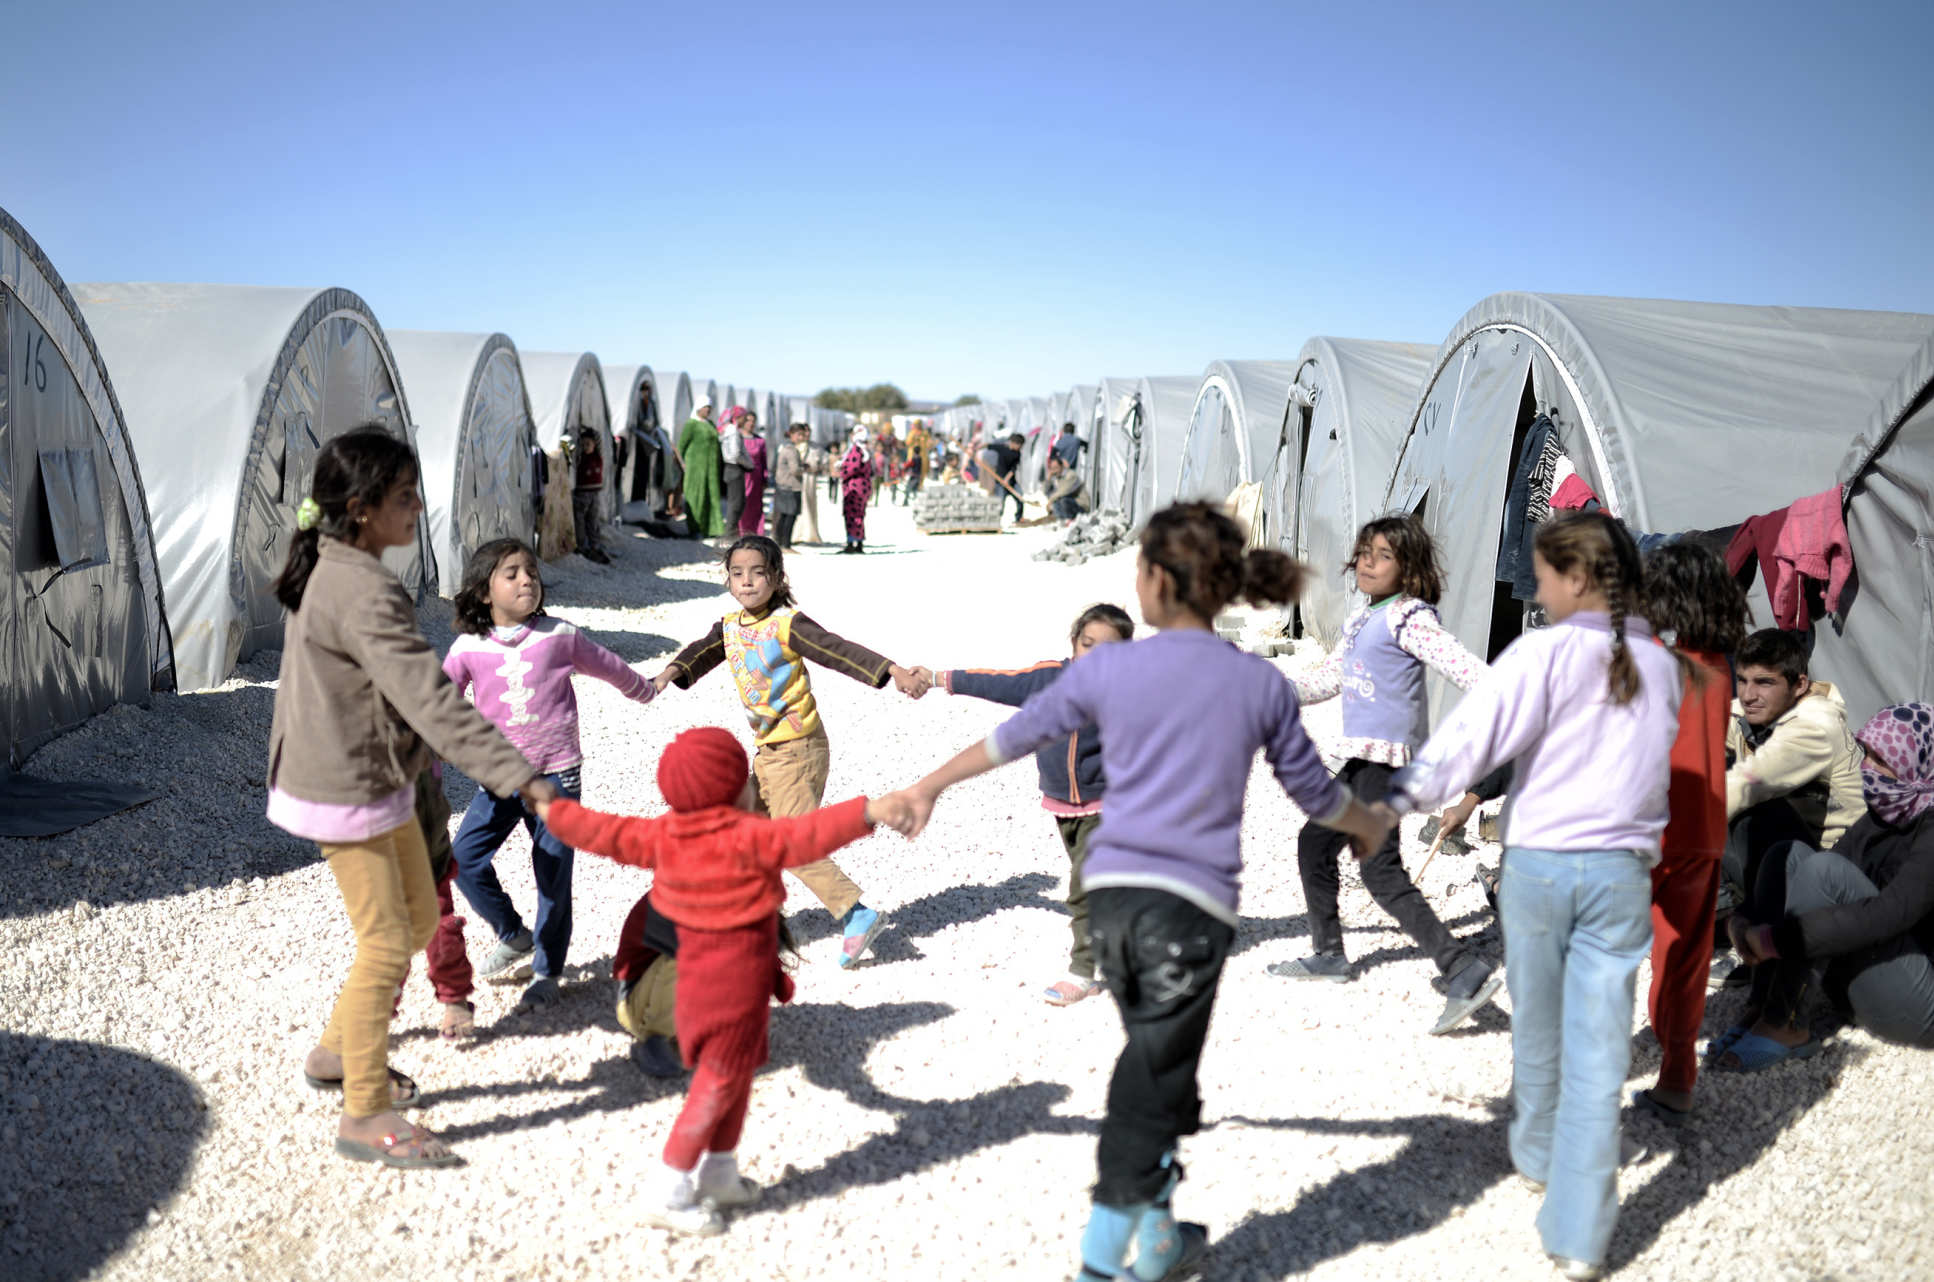 Refugee camps